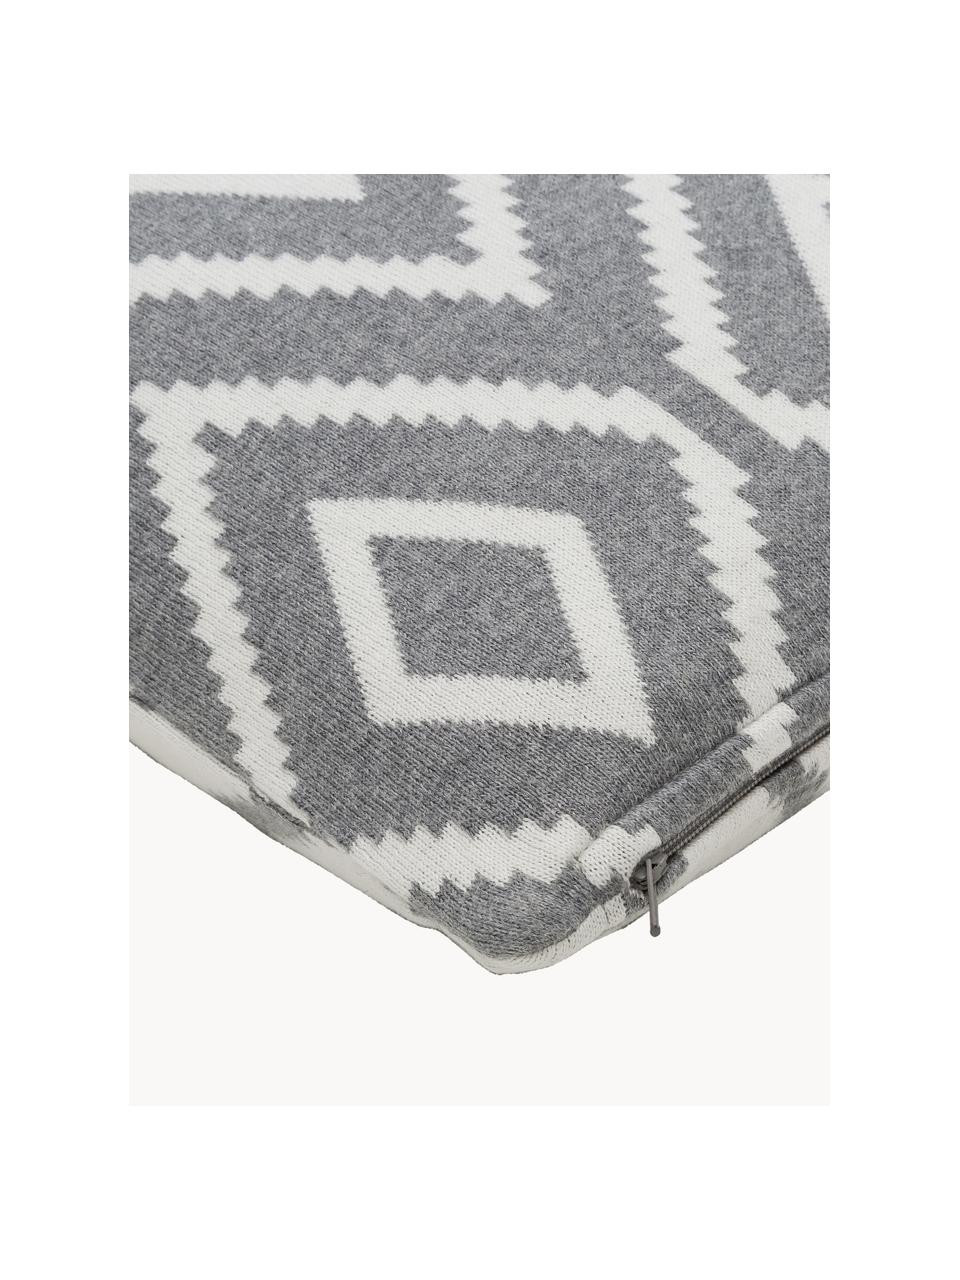 Strick-Wendekissenhülle Chuck mit grafischem Muster, 100% Baumwolle, Grau, Weiß, B 40 x L 40 cm